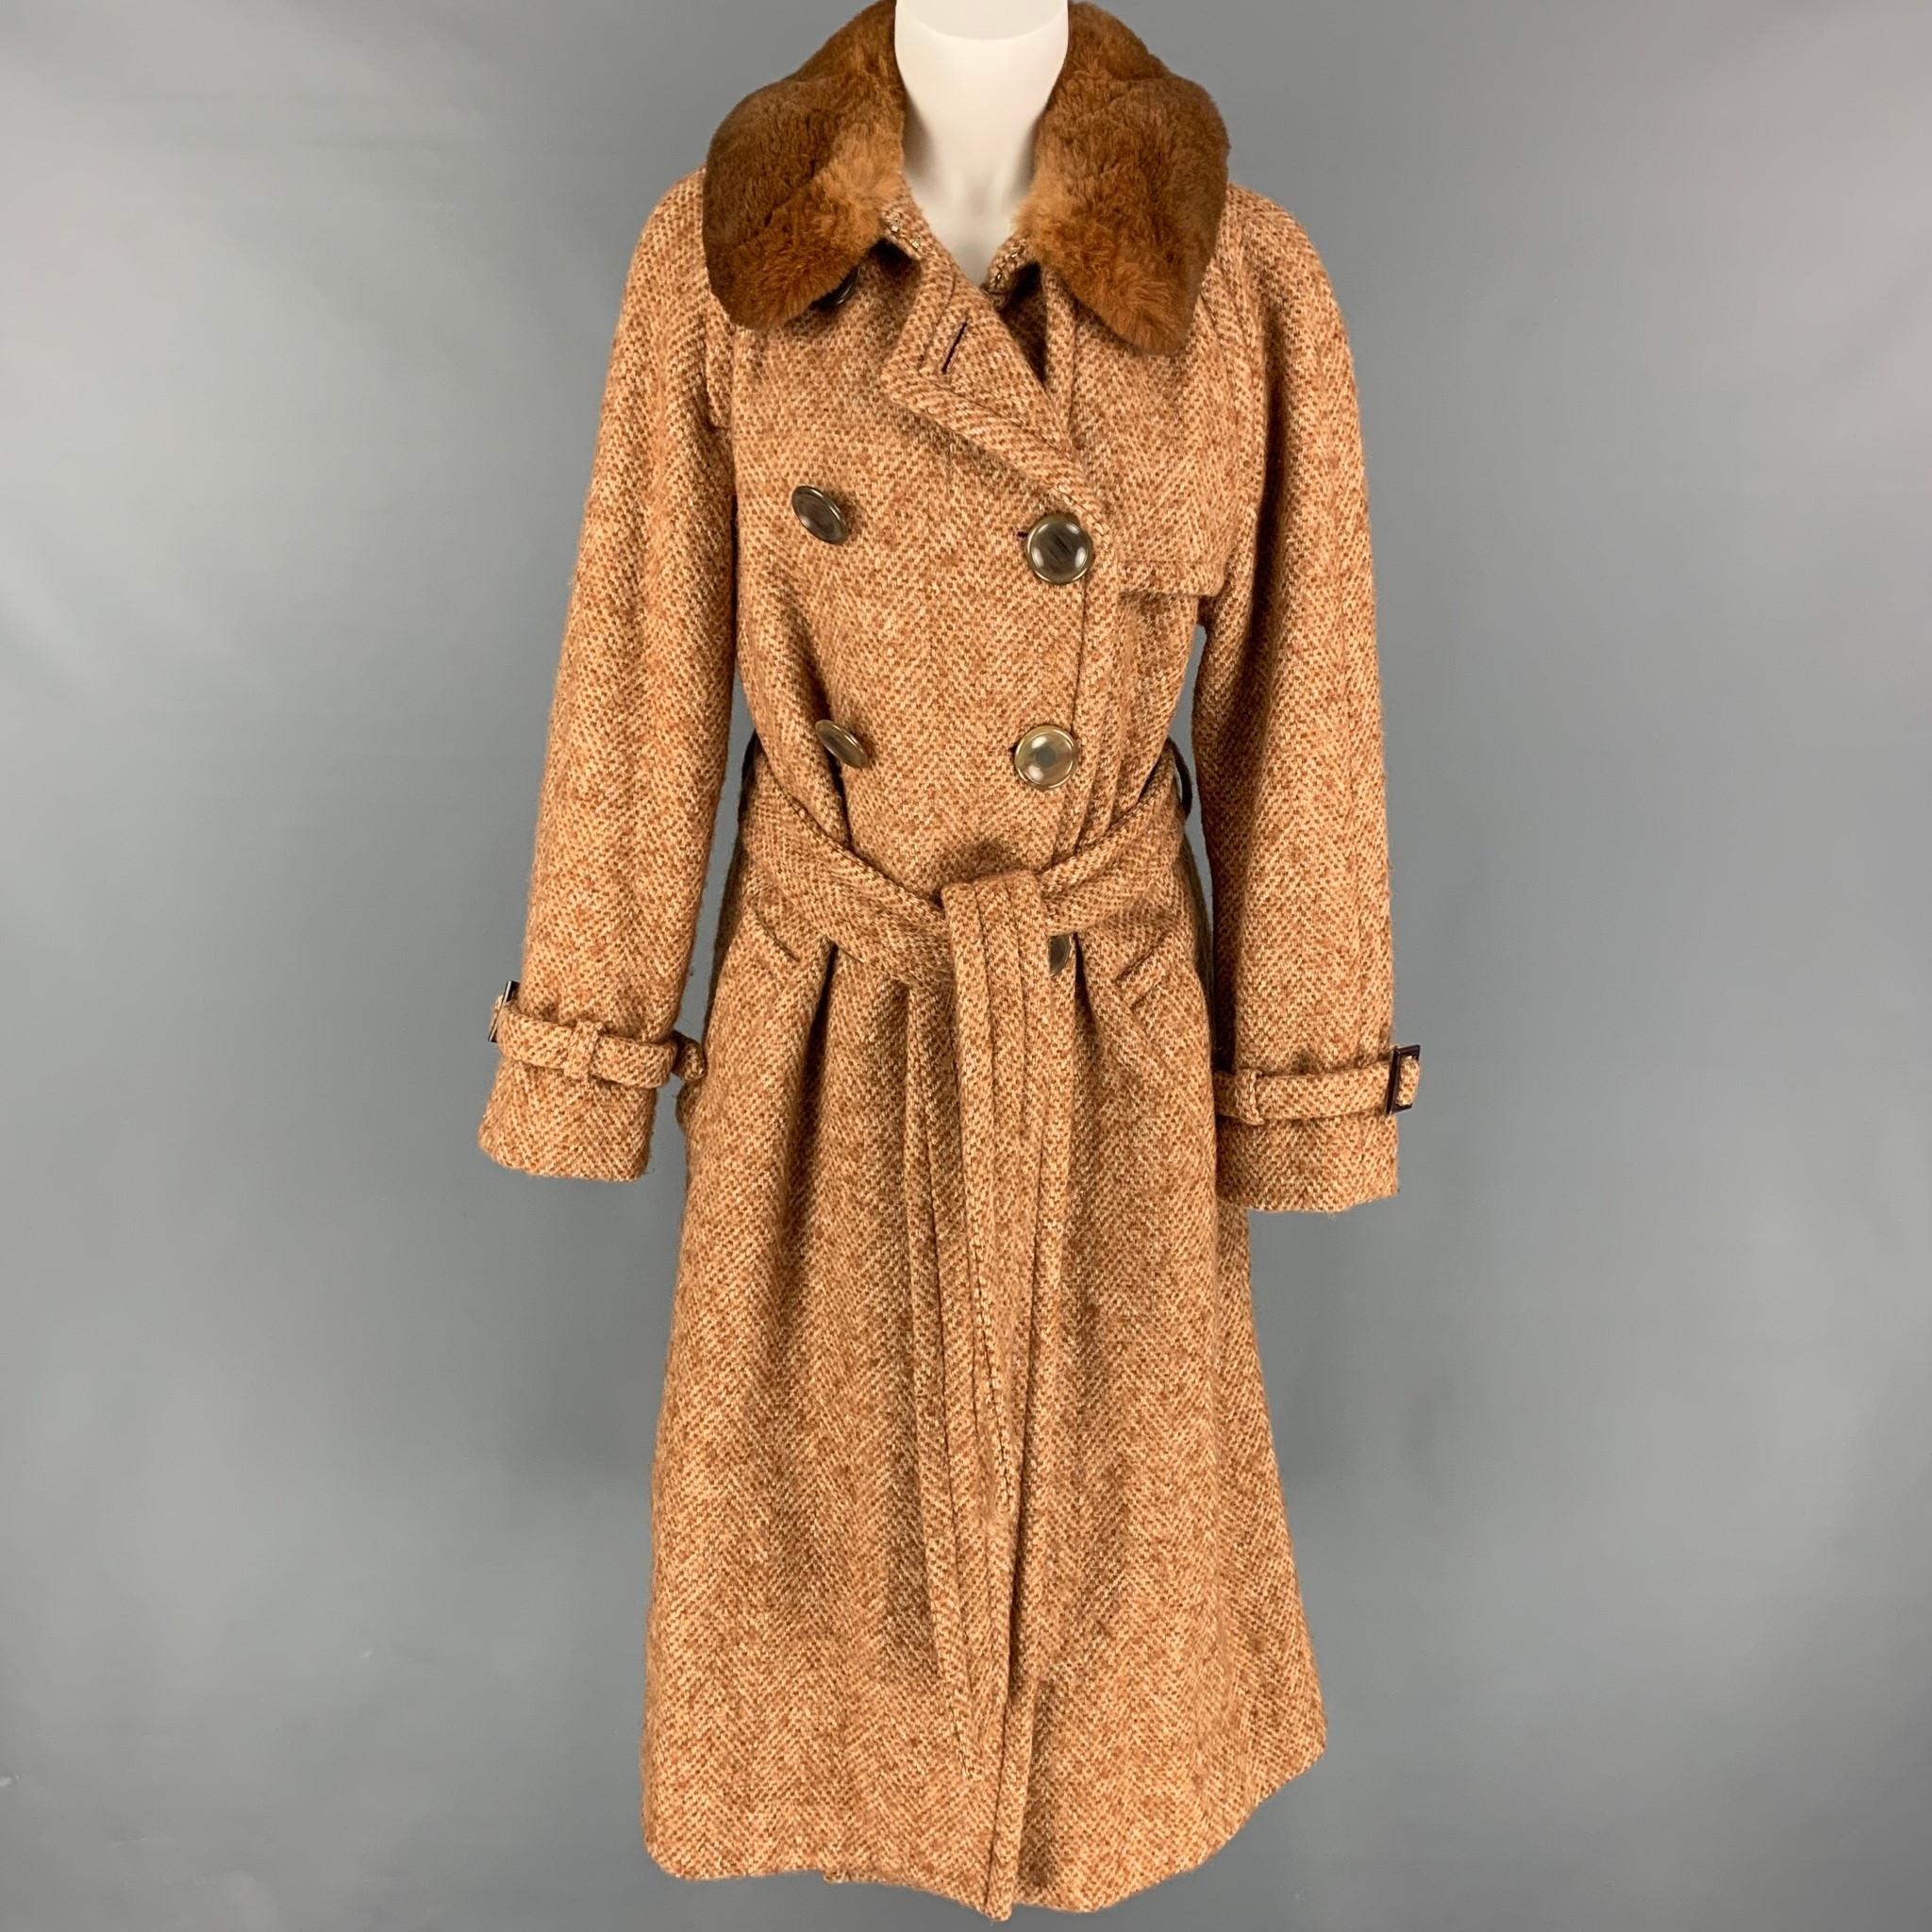 MARC JACOBS - Manteau ceinturé en tweed mélangé de laine beige et brun clair, taille 12